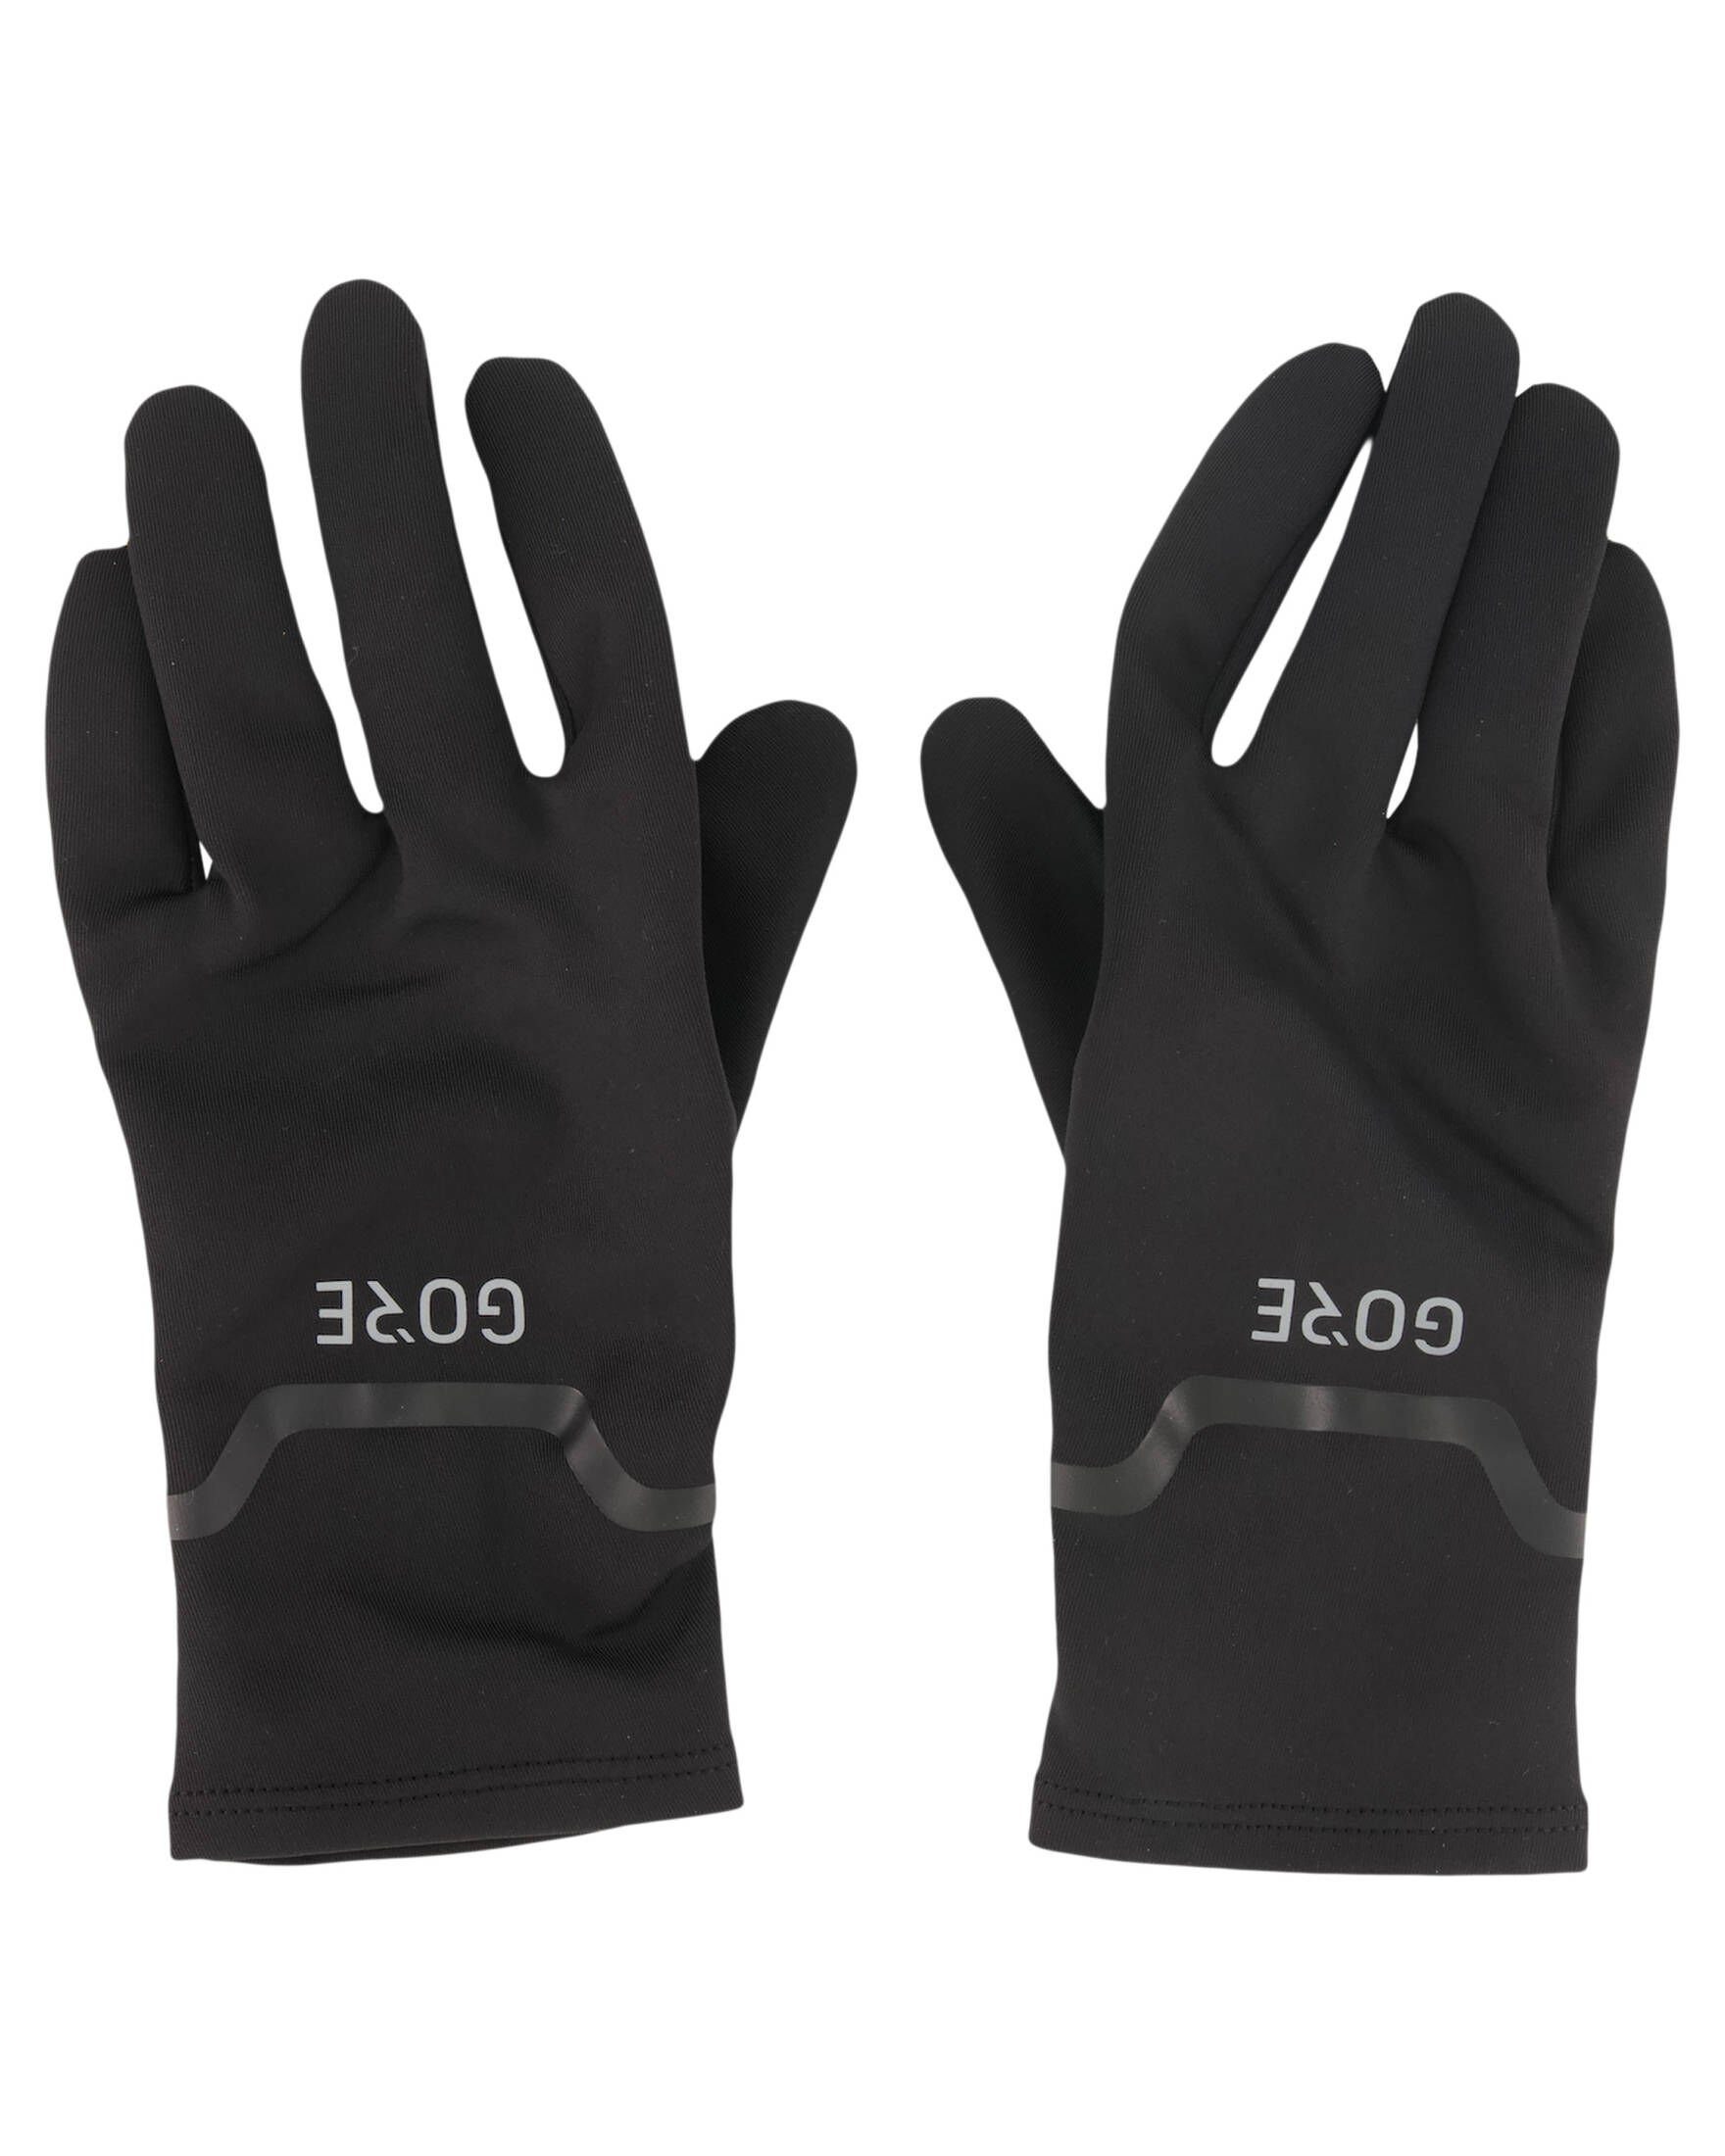 Handschuhe GORE® BLACK Laufhandschuhe Herren und Damen Wear